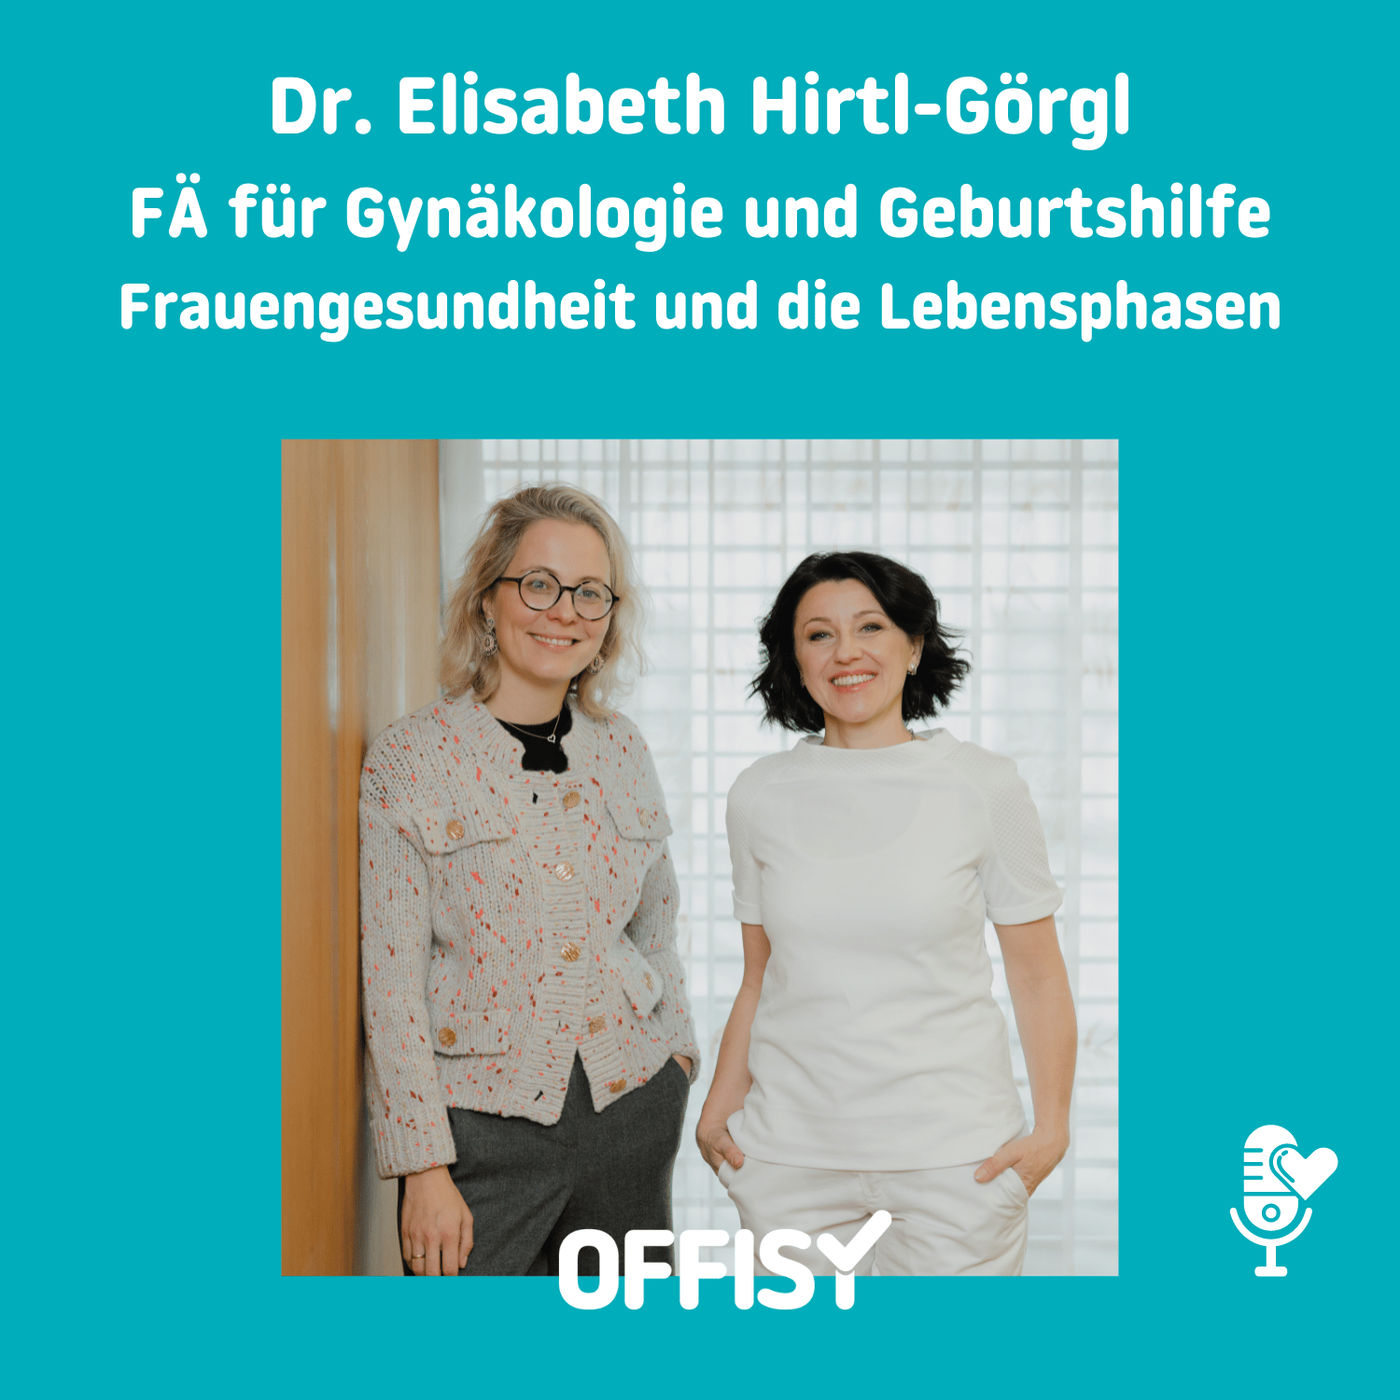 👩‍⚕️Frauengesundheit 👩‍👧und die Lebensphasen mit Dr. Elisabeth Hirtl-Görgl